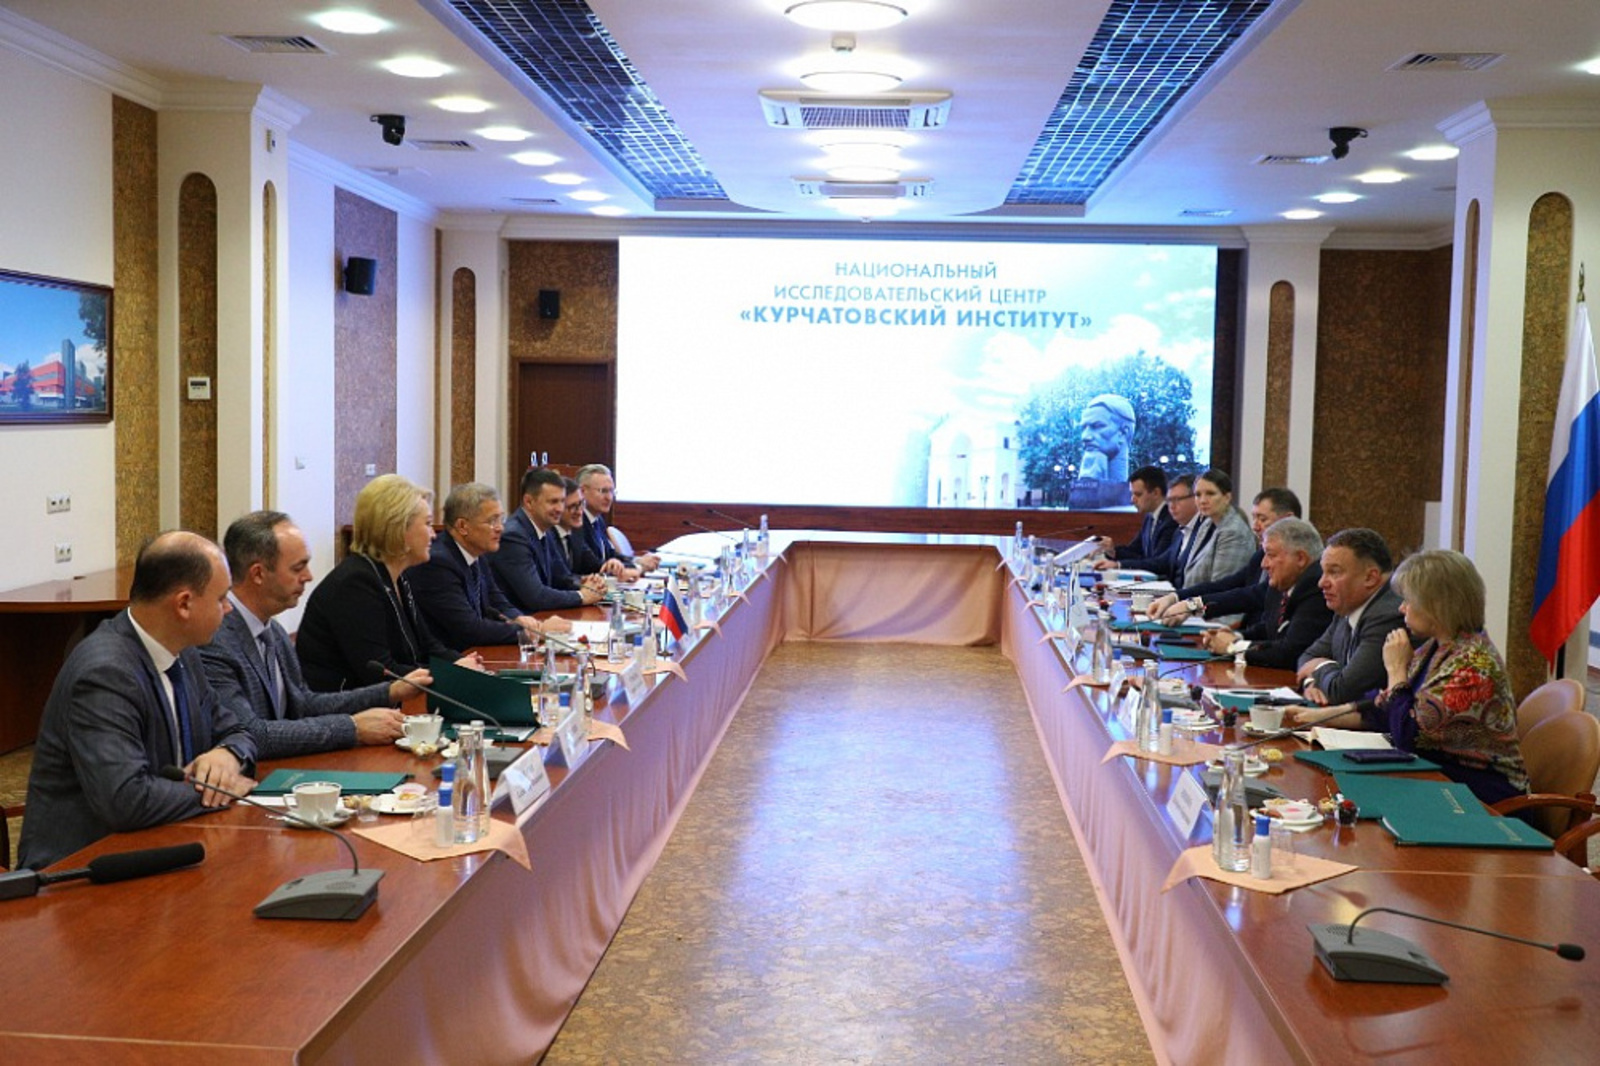 Башкортостан заключил соглашение о сотрудничестве с Курчатовским институтом